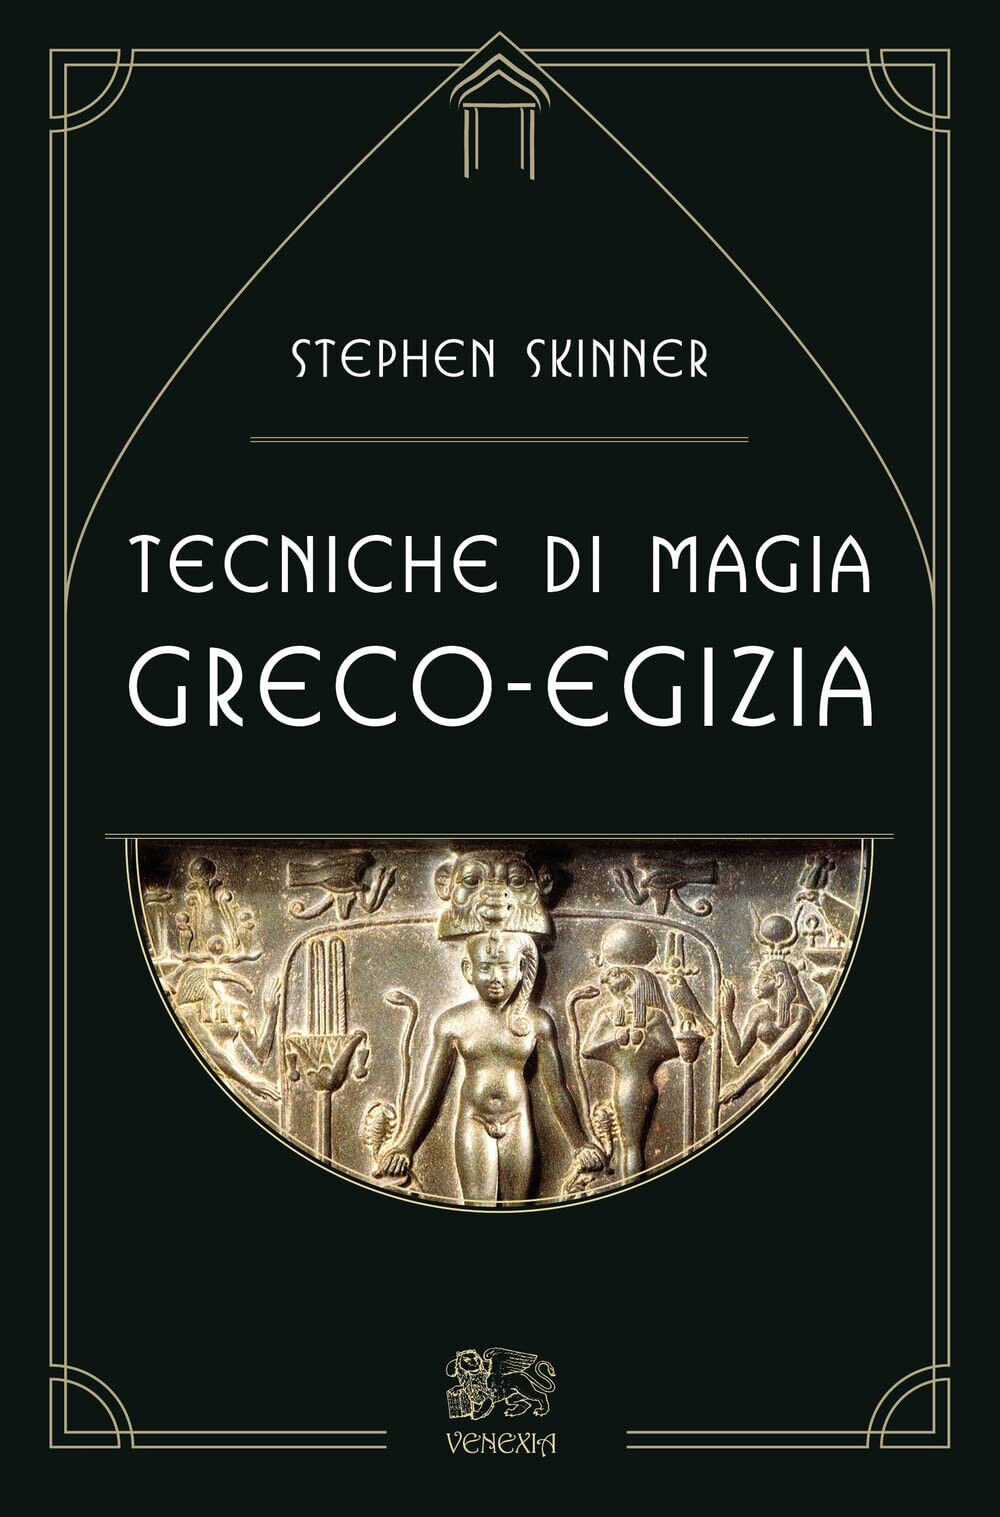 Tecniche di magia greco-egizia di Stephen Skinner - Venexia, 2022